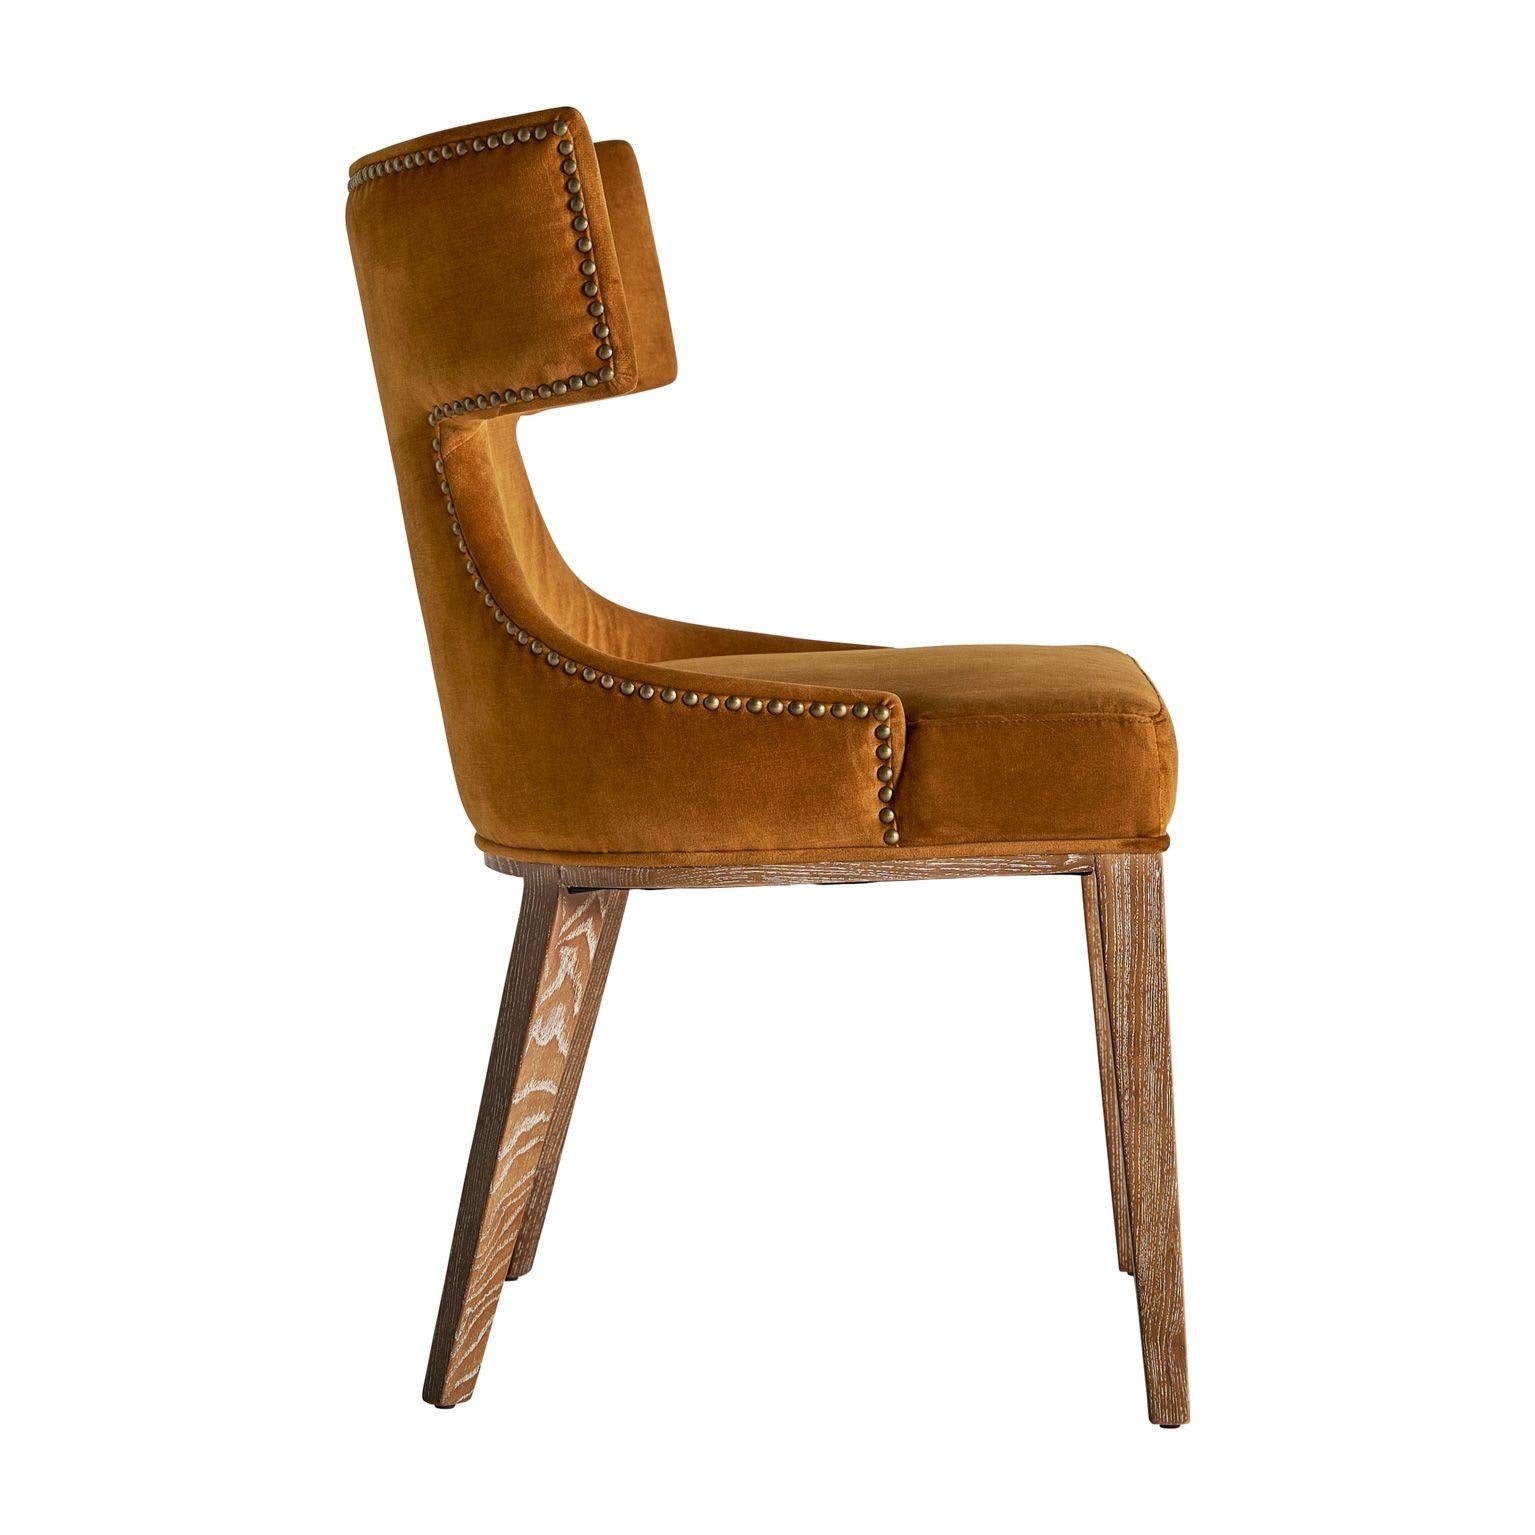 Dieser Sessel verkörpert Leichtigkeit, Fülle und Gemütlichkeit. Gefertigt aus Leinen und Massivholzstruktur mit drehbarem Fuß. Das Geheimnis liegt in den raffinierten Details, weshalb die geschwungenen Konturen und die Grandeur des Steppmusters